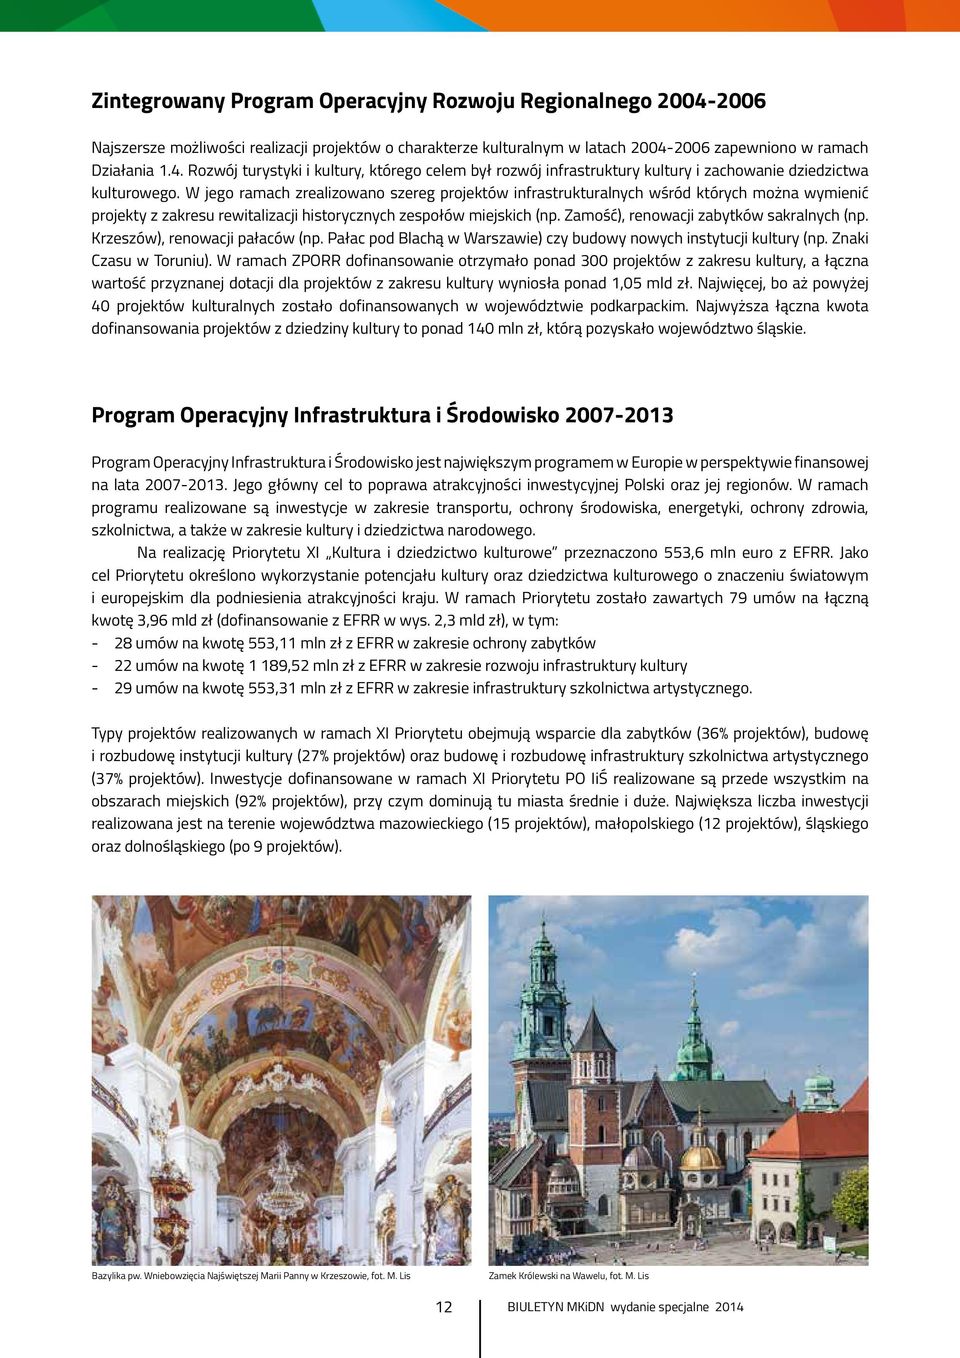 Zamość), renowacji zabytków sakralnych (np. Krzeszów), renowacji pałaców (np. Pałac pod Blachą w Warszawie) czy budowy nowych instytucji kultury (np. Znaki Czasu w Toruniu).